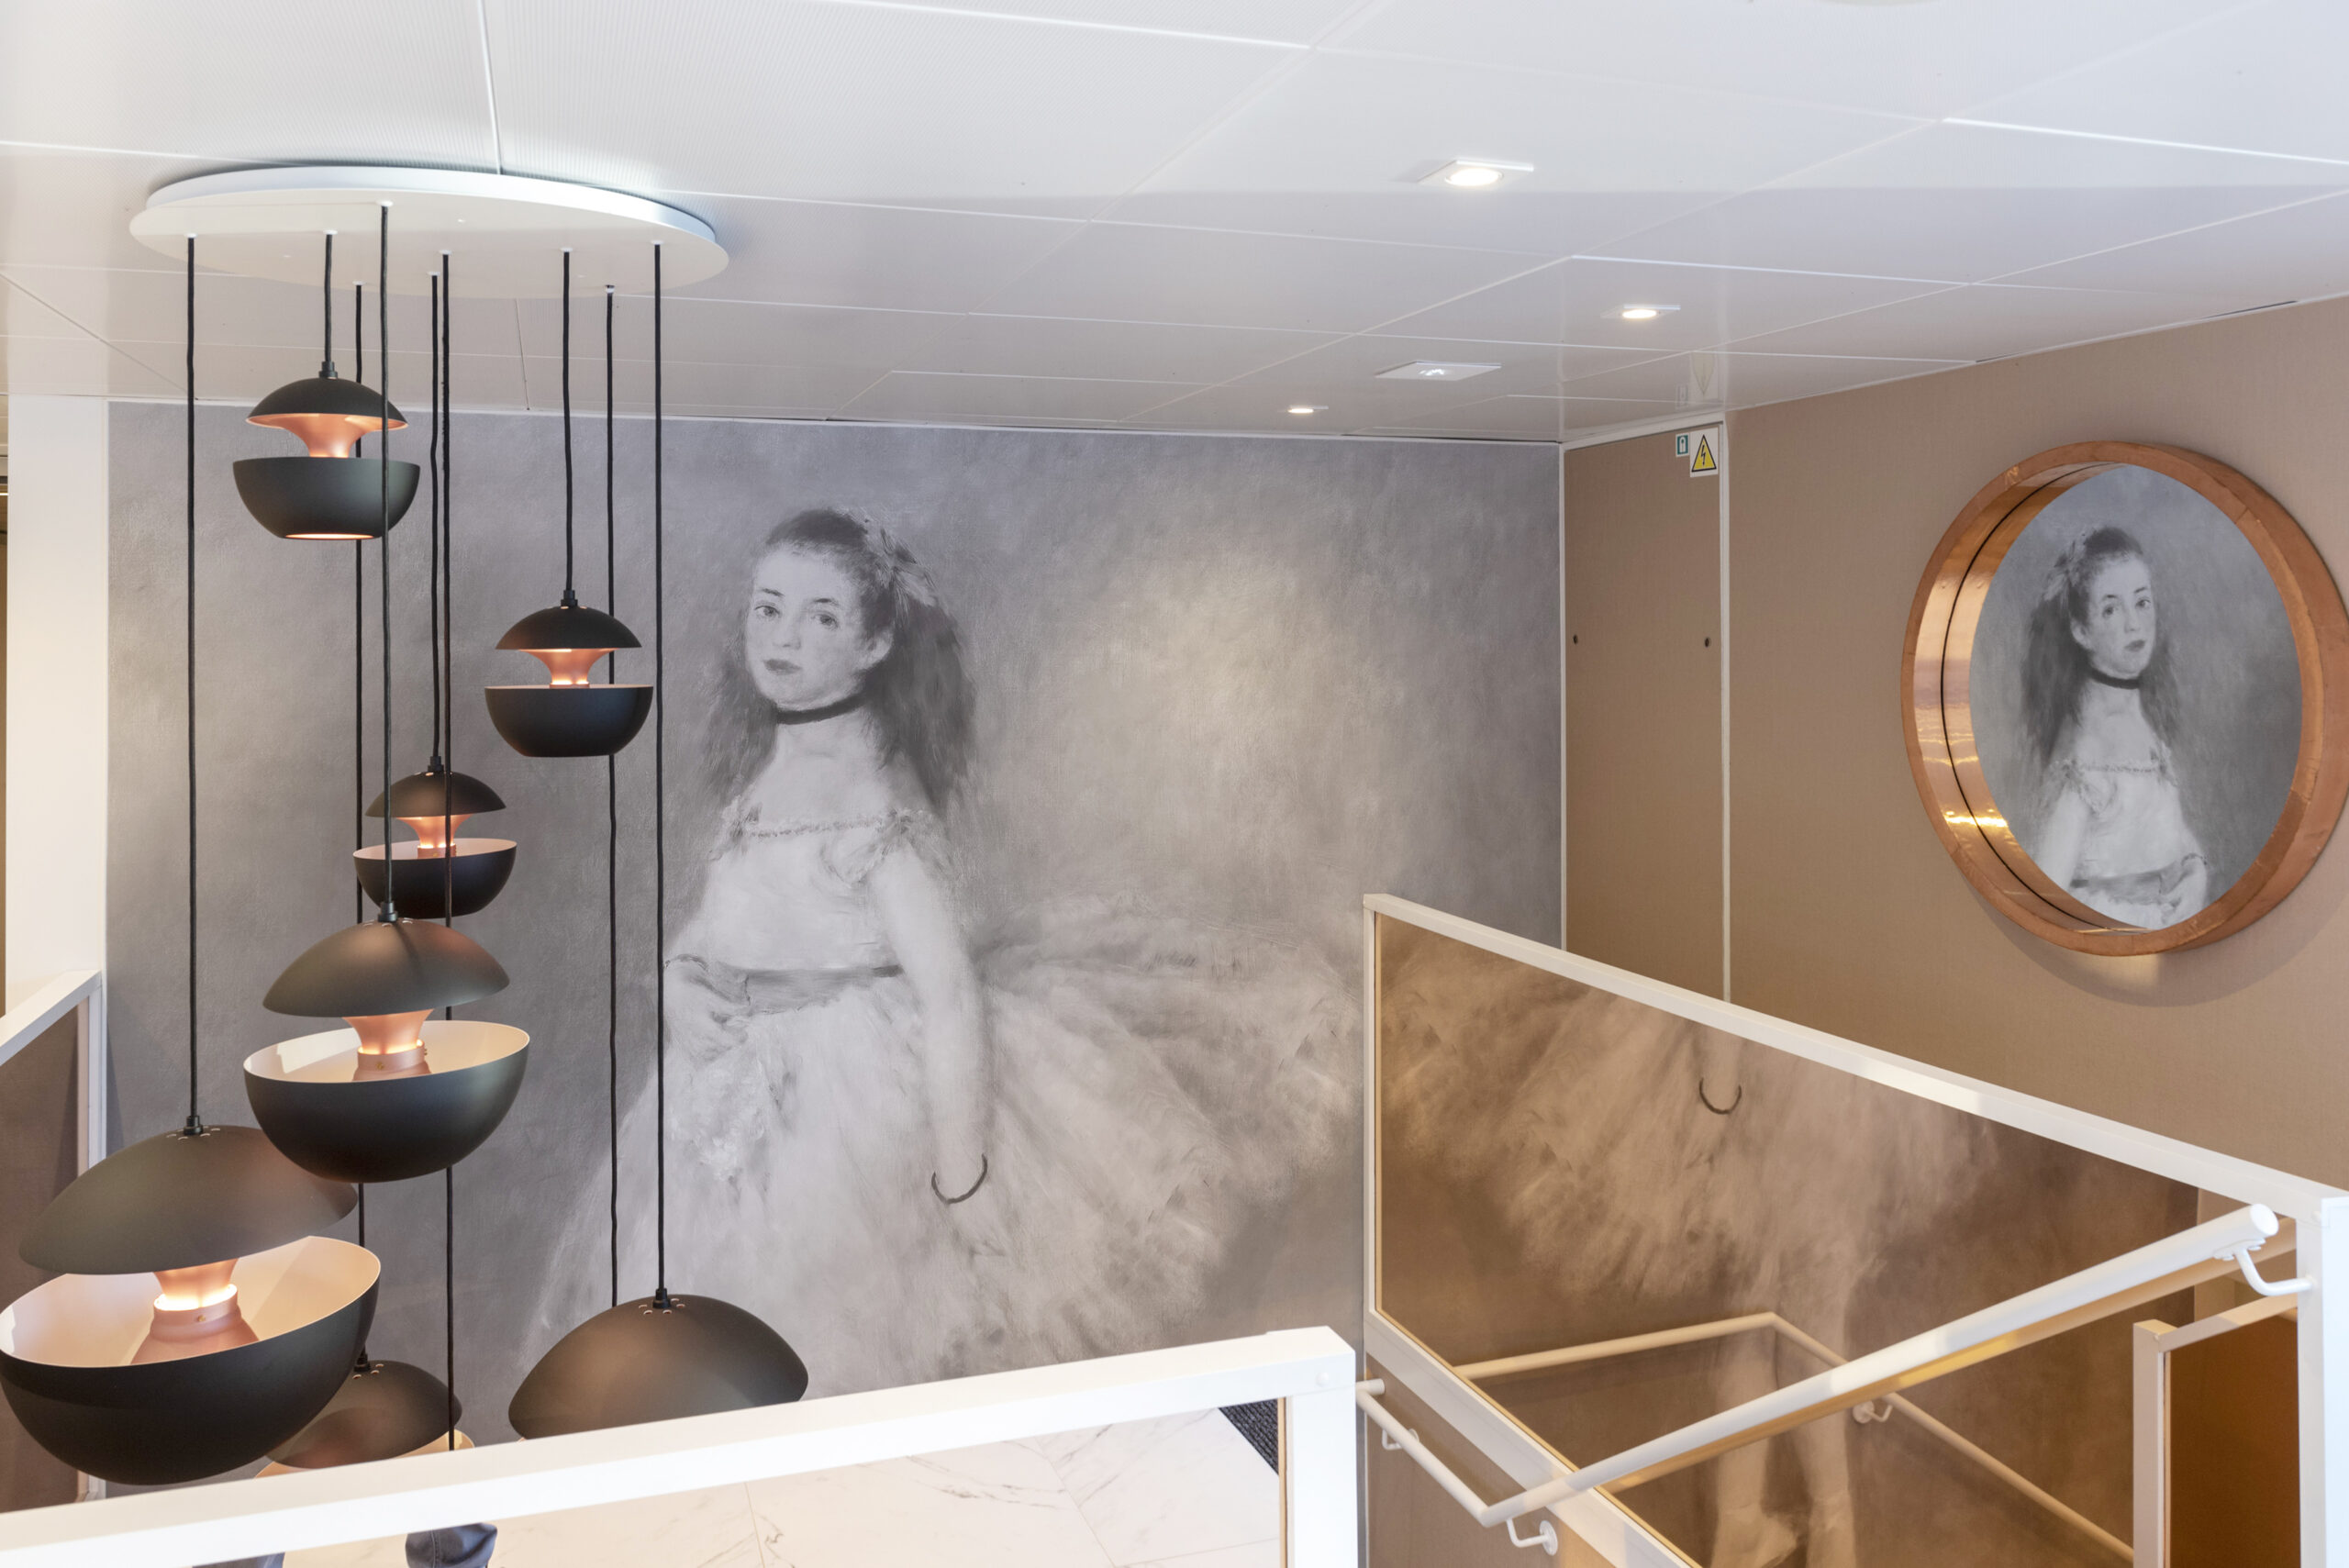 Agencement des espaces commun du bateau de croisère : escalier avec suspensions et tissu tendu décoratif "ballerine" de Renoir